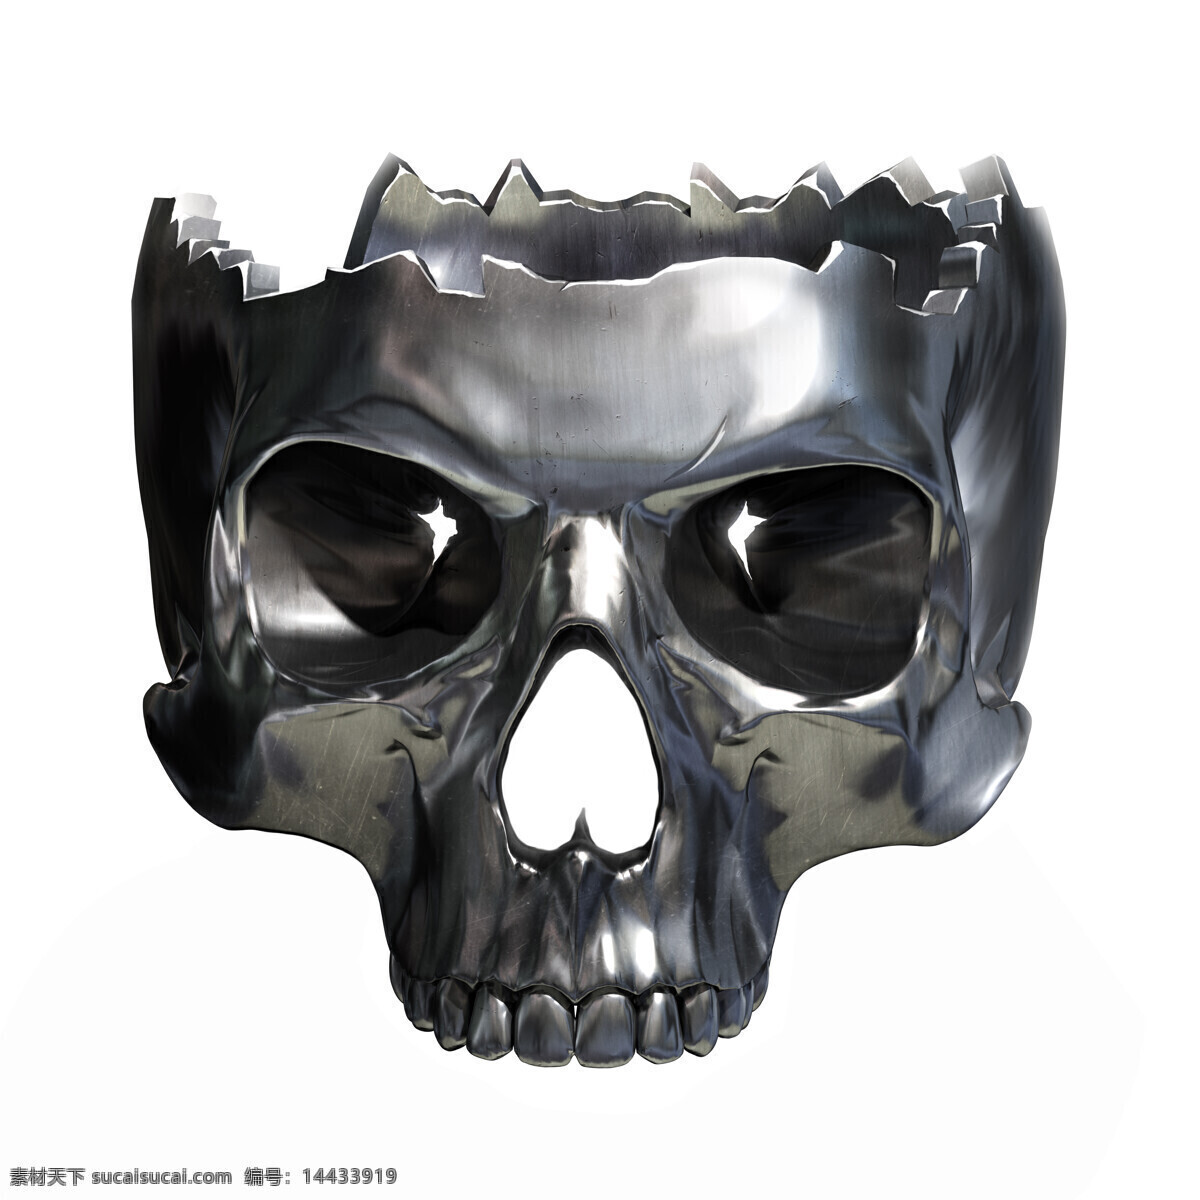 金属 骷髅 金属骷髅 金属骷髅图片 不锈钢骷髅 金属质感 头骨 其他类别 生活百科